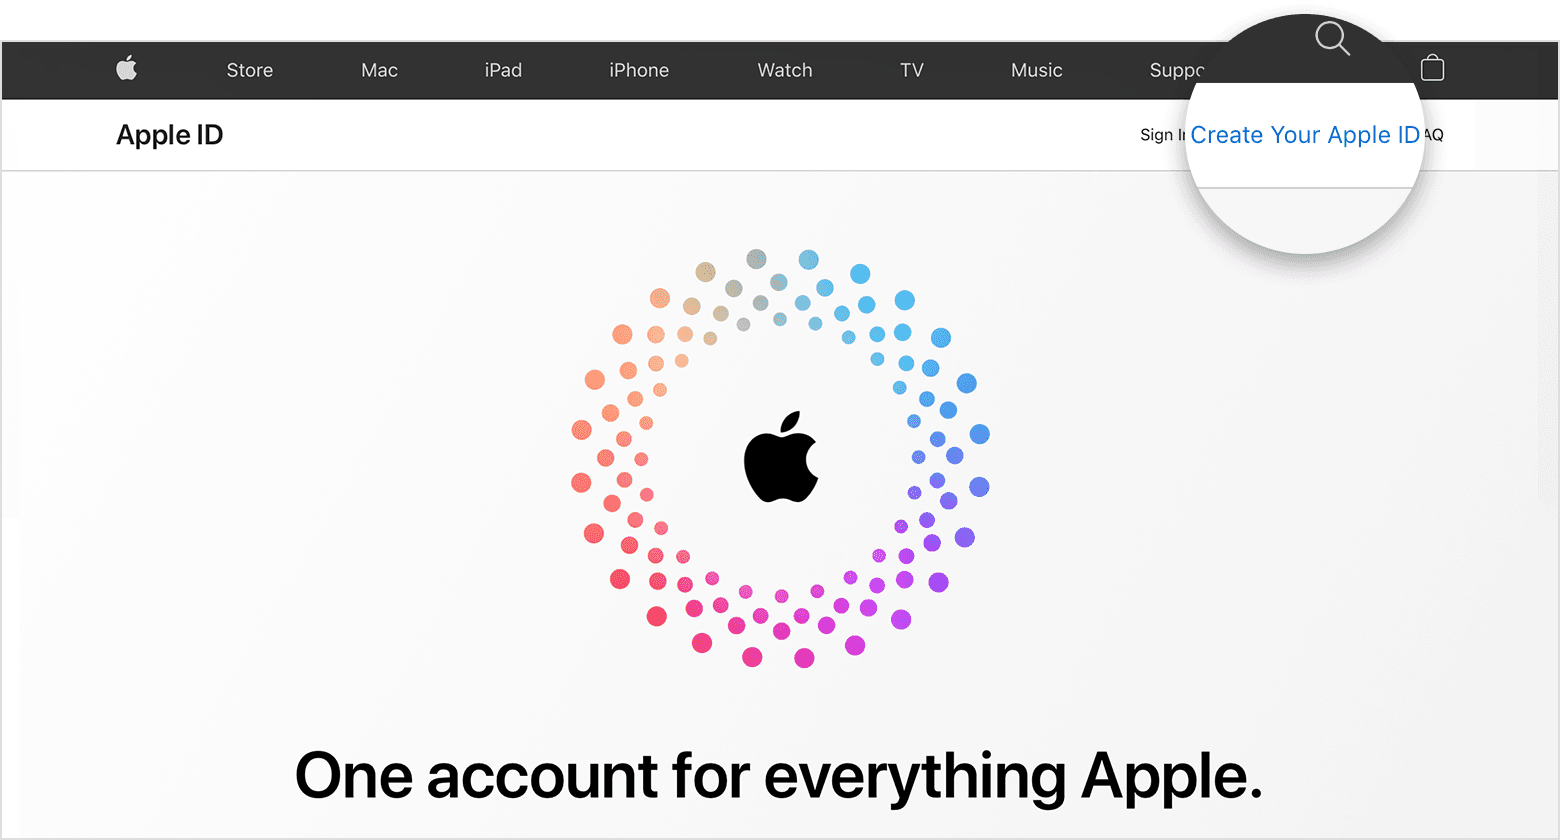 Снимок экрана со страницей appleid.apple.com, содержащий логотип Apple в центре экрана с разноцветными концентрическими кругами.